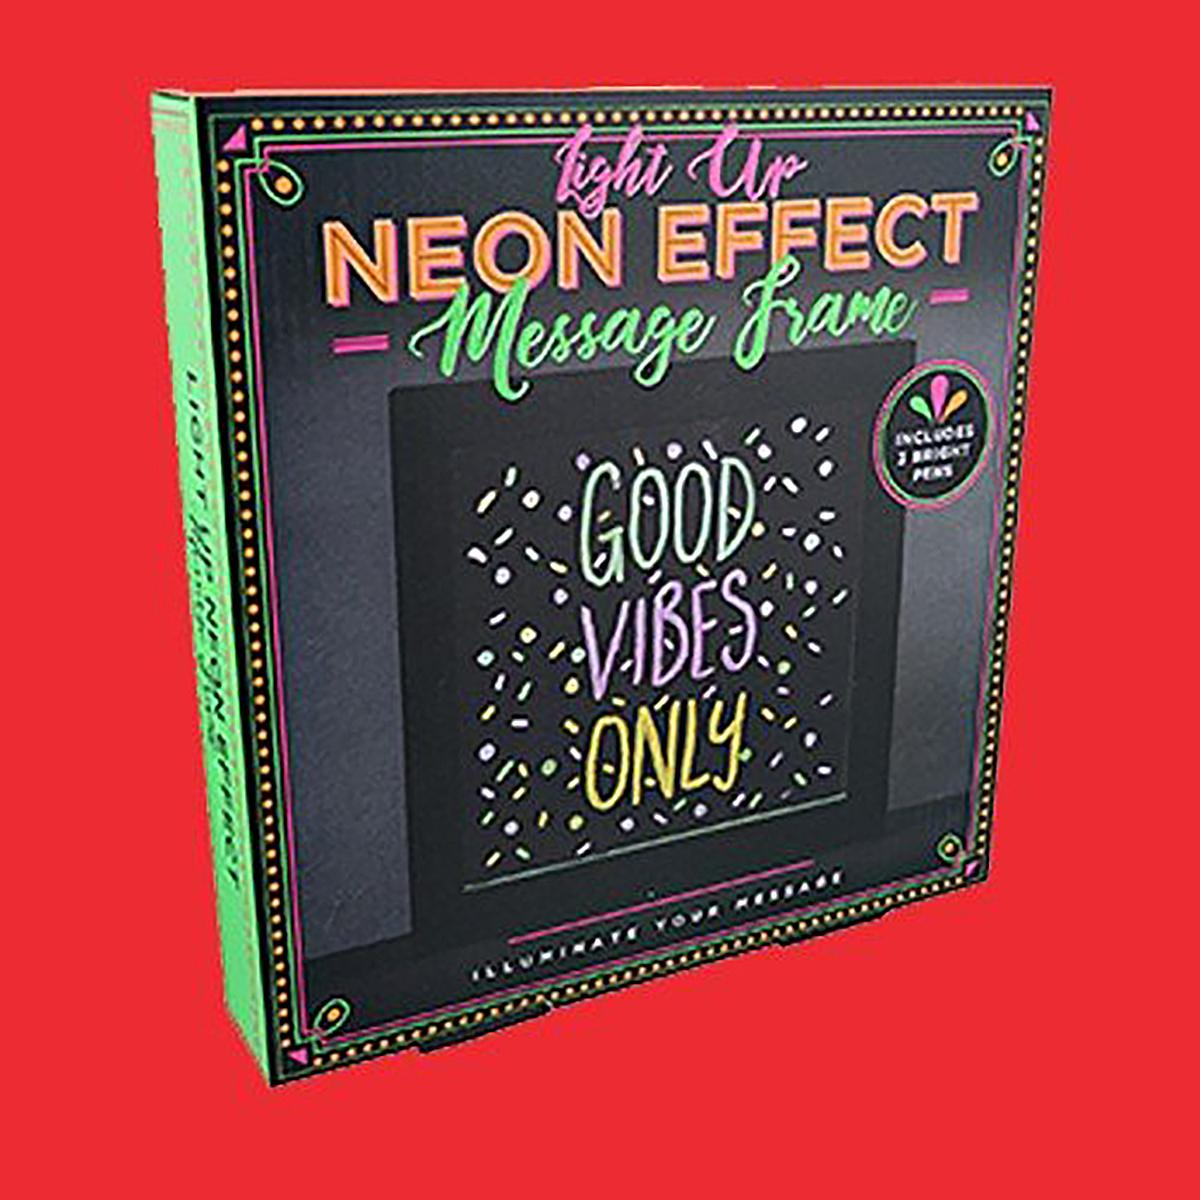 FIZZ CREATIONS Neon Effect Light Up Message Frame Merchandise